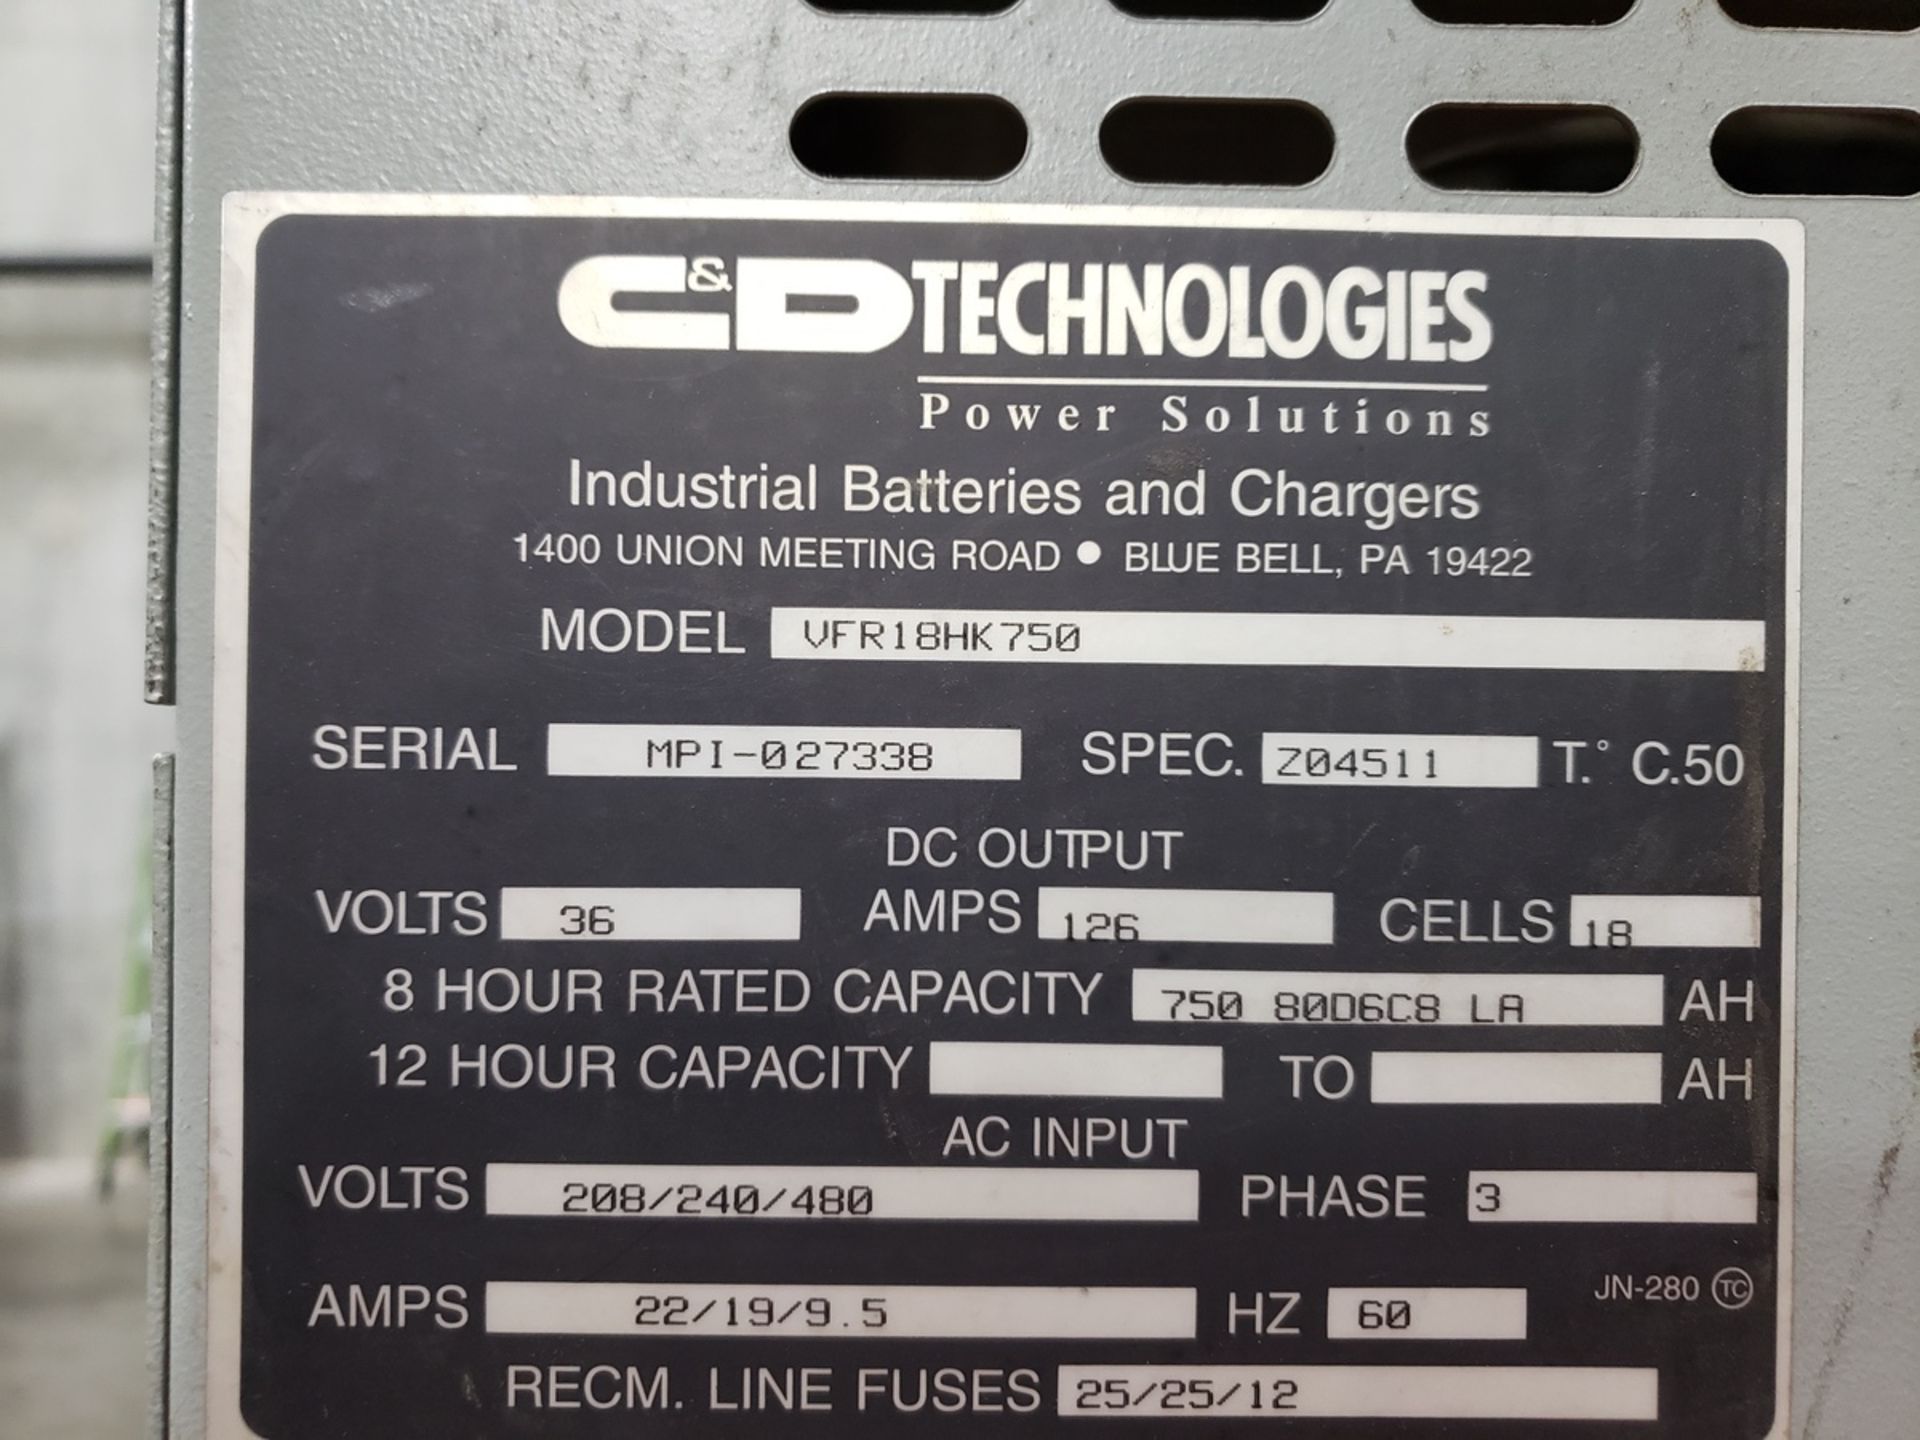 C&D Battery Charger, 36 Volt, M# VFR18HK750, S/N MPI-027338 | Rig Fee: $100 - Image 2 of 2